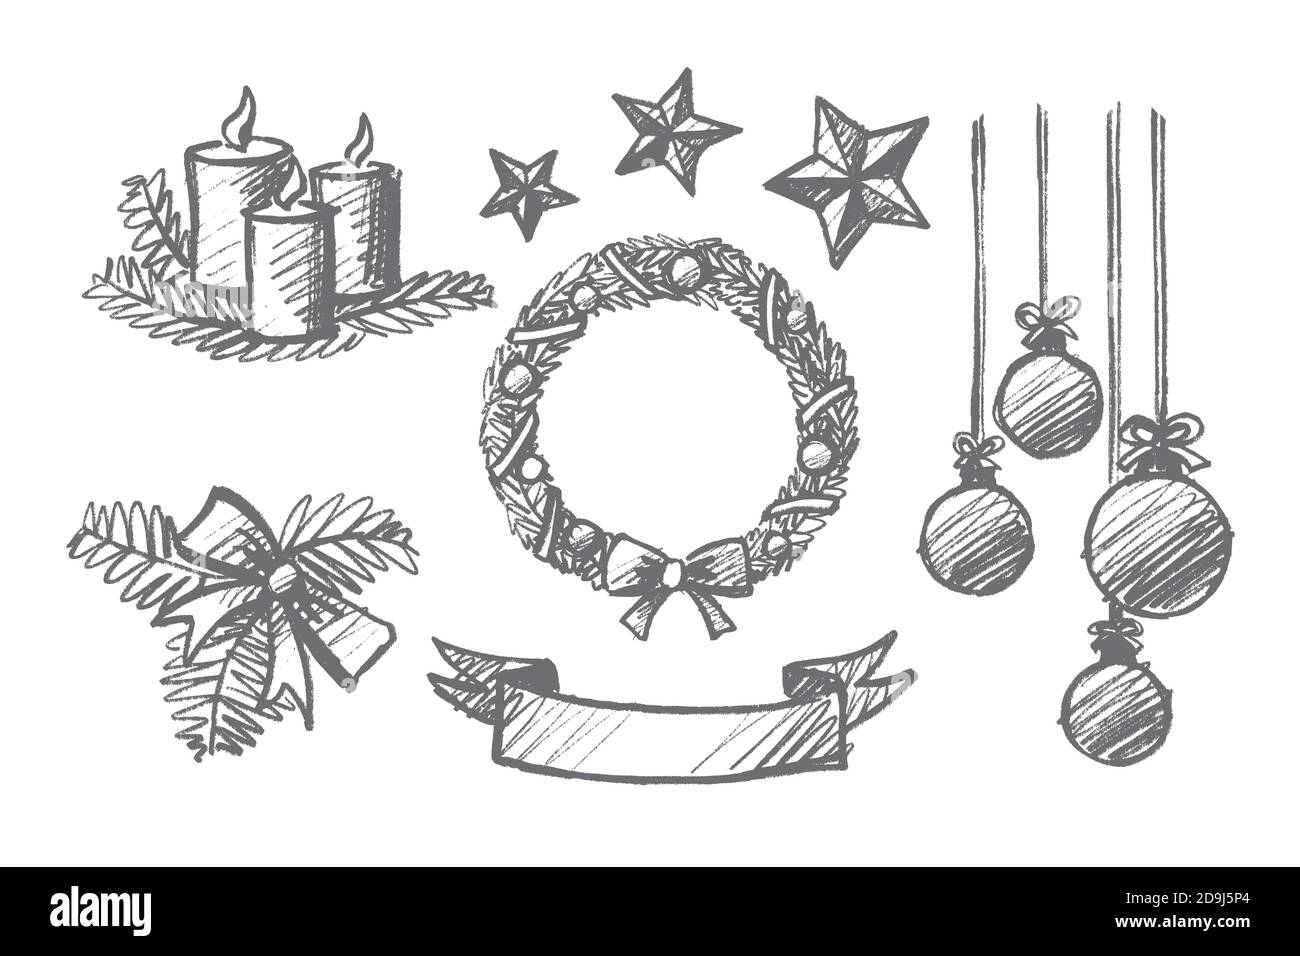 Disegno vettoriale del concetto di Natale disegnato a mano. Candele, nastri, palle appese, stelle di decorazione, corona ornata e prua con isolo ramo abeti Illustrazione Vettoriale